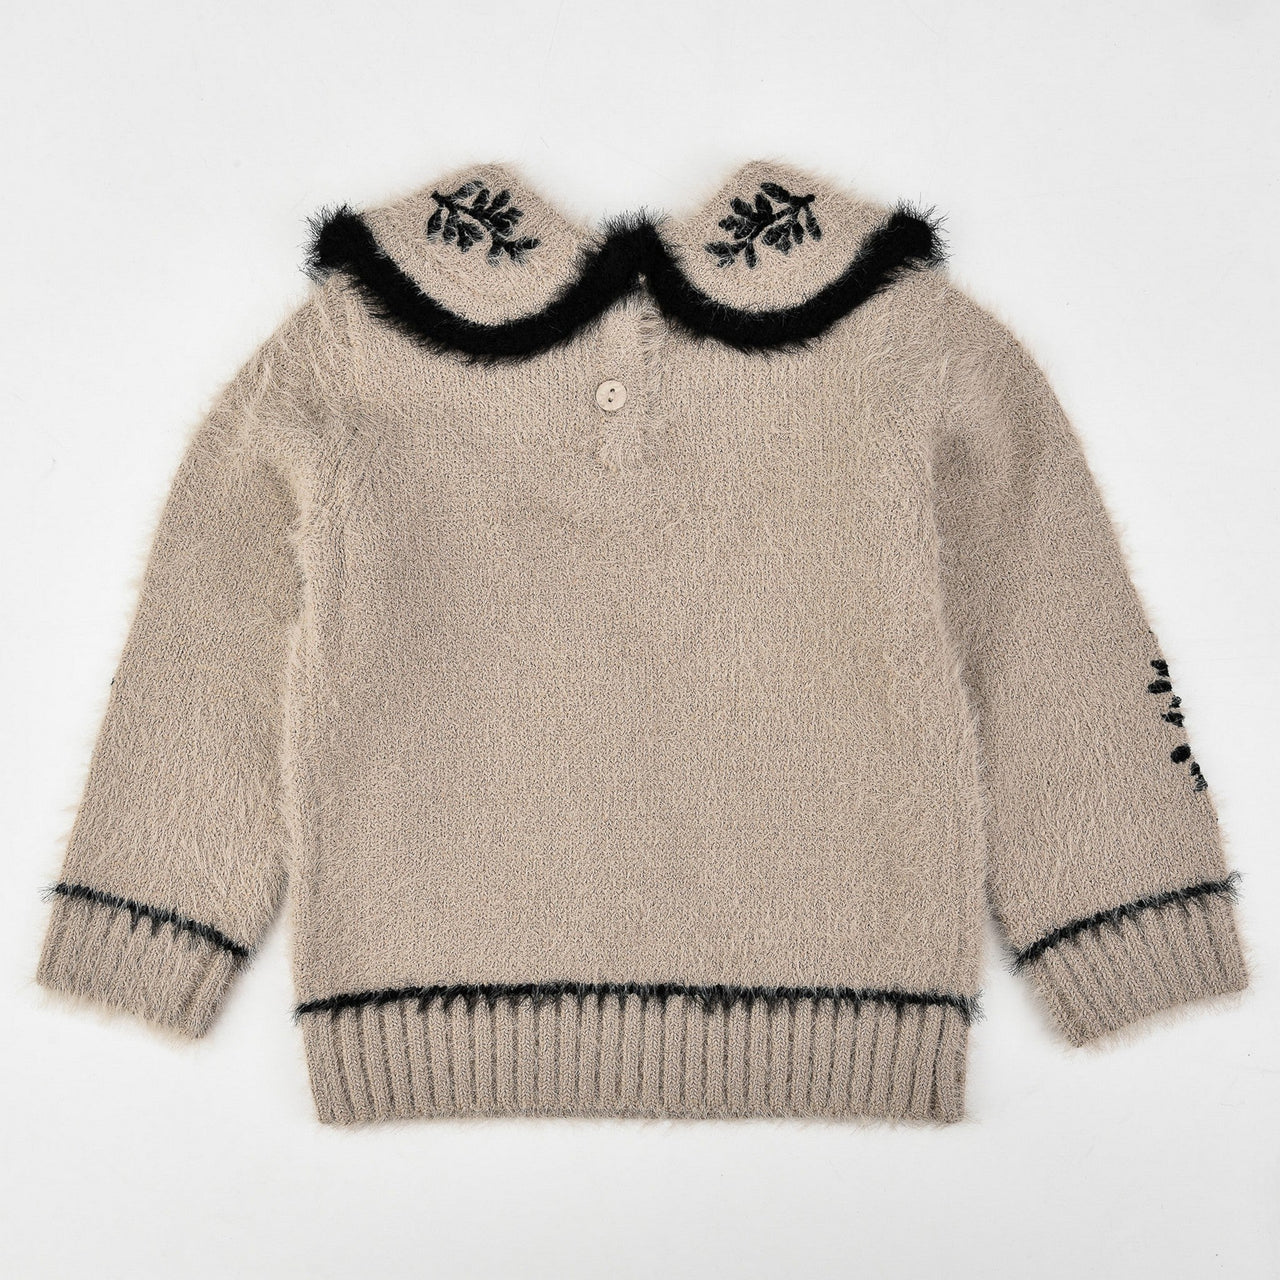 Mohair Baby Flower Sweater - Kidichic